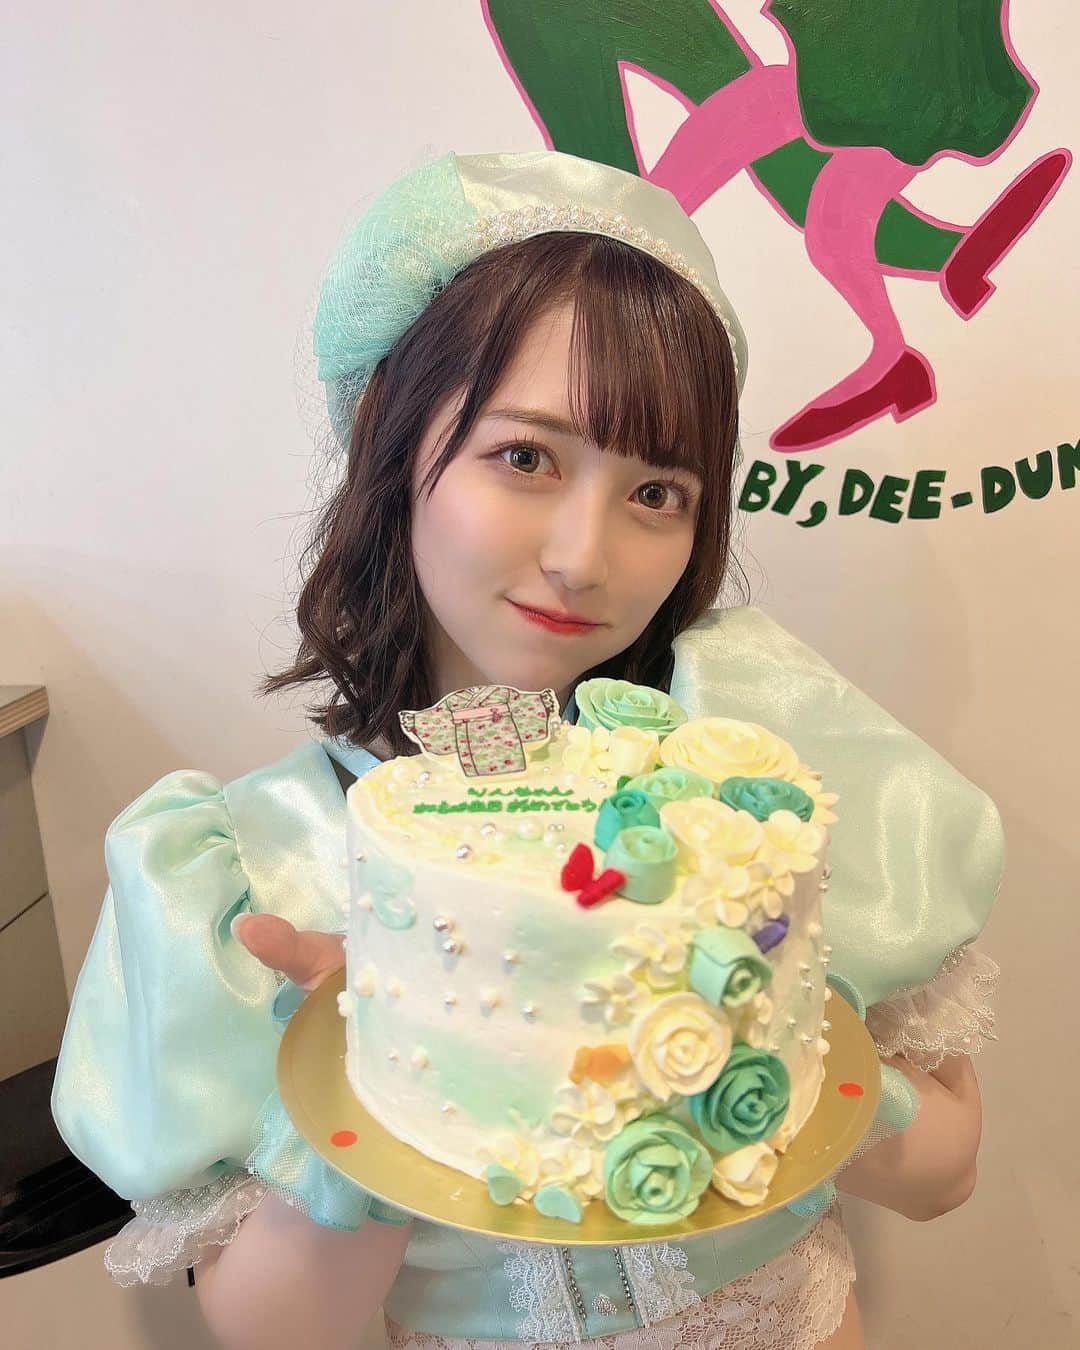 保科凜のインスタグラム：「生誕祭で頂いたケーキ🎂  担当カラーのエメラルドグリーンが基調のケーキで、メンバーのカラーの蝶々がいて可愛い！ 飾りの着物の絵もVASARAさんで着たやつと一緒でかわよ〜〜〜〜  いっぱい考えてくれてありがとう😚  そして中から3匹のペンギン出てきたwwww  ・ ・   #idol  #japaneseidol  #jamscollection  #selfie  #like  #followme #cake  #birthdaycake  #22   #アイドル #ジャムズ #保科凜  #生誕祭 #ペンギン  #デコレーションケーキ」